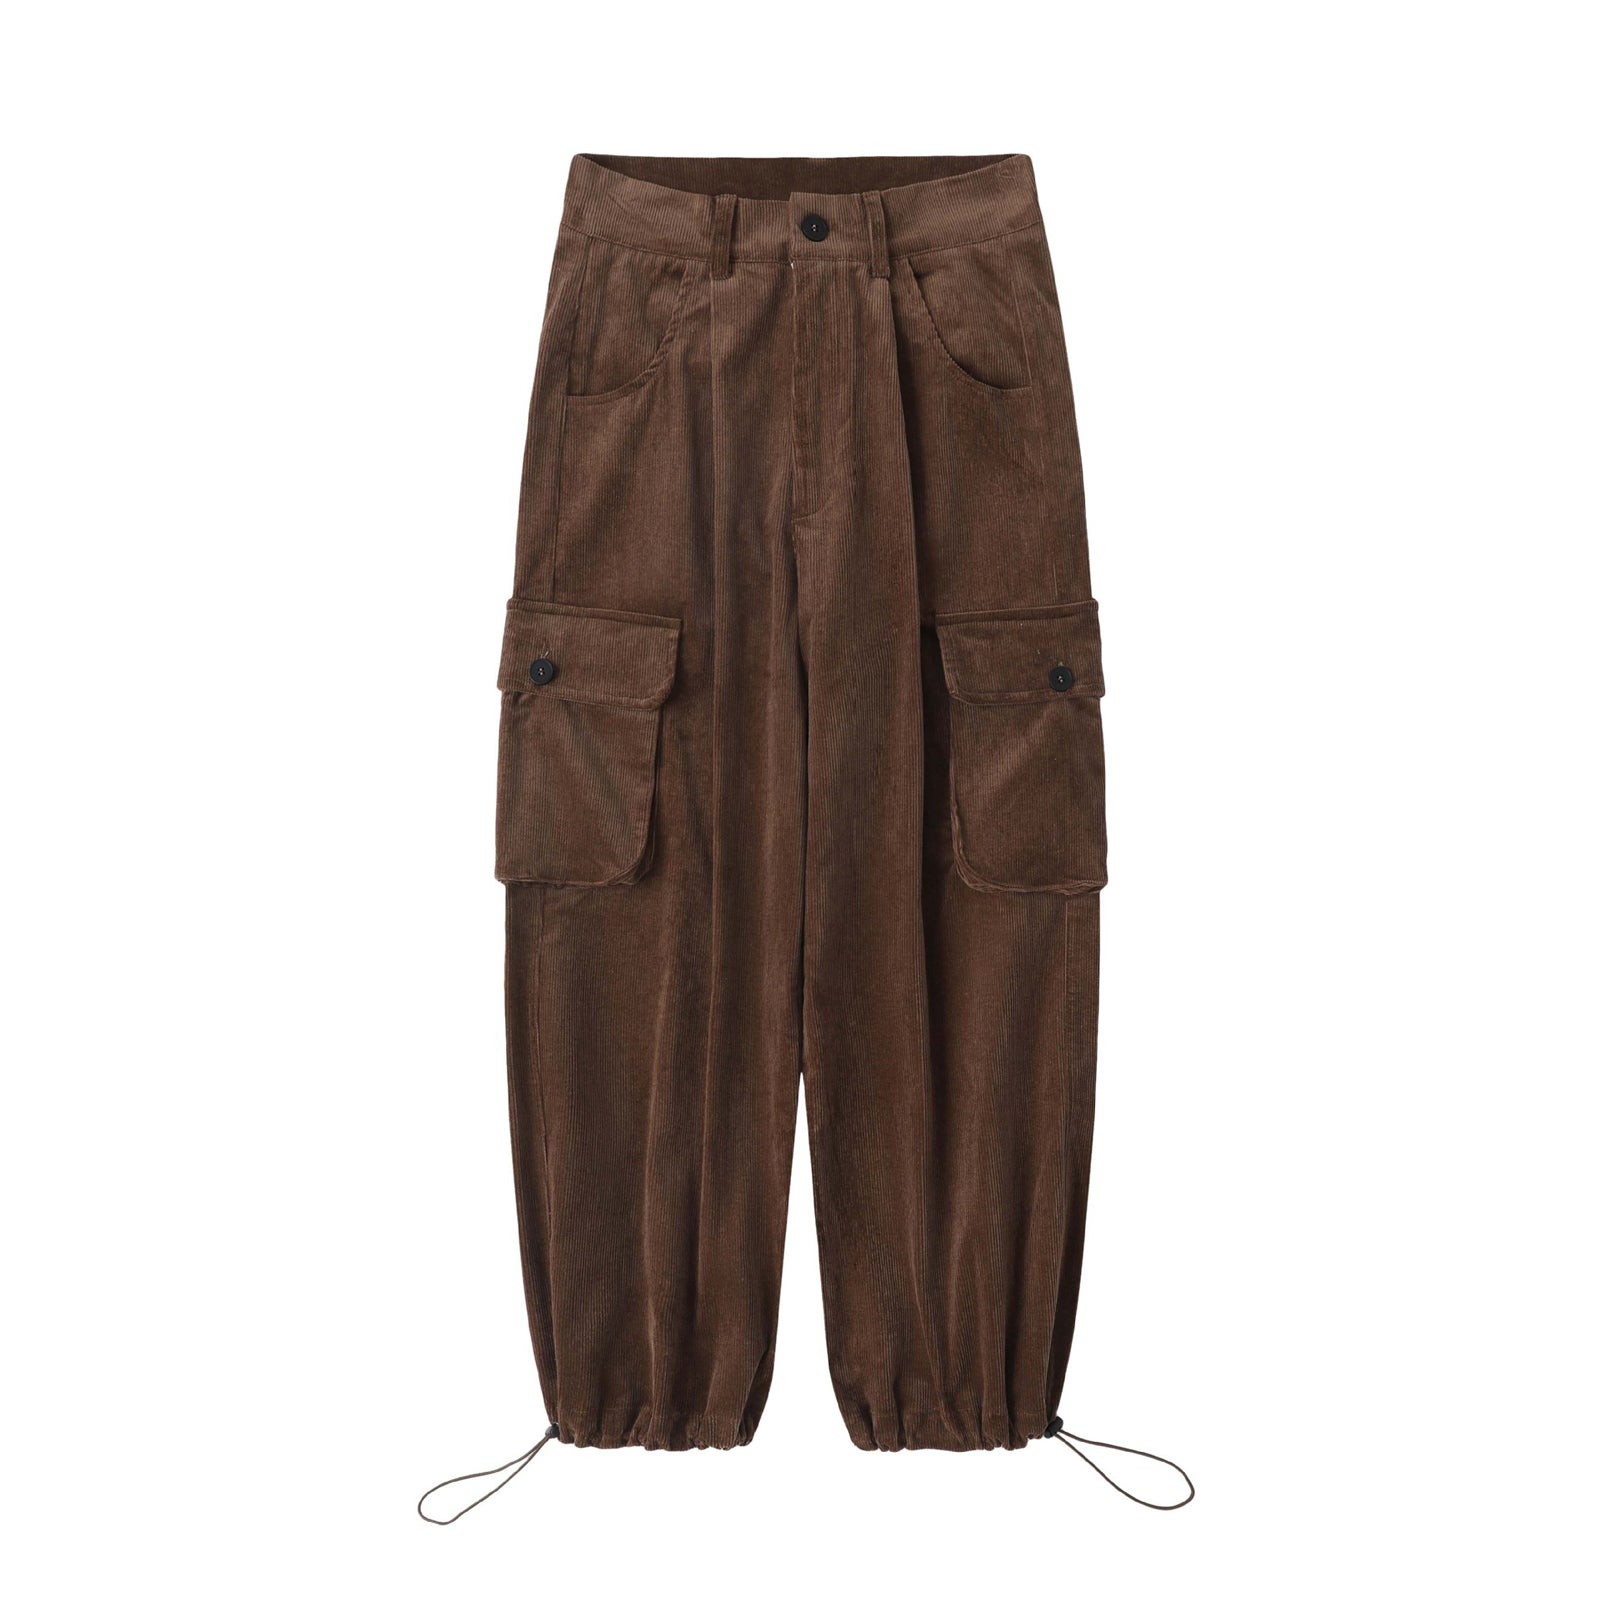 Corduroy Vintage Trousers Multi-Pocket Brown